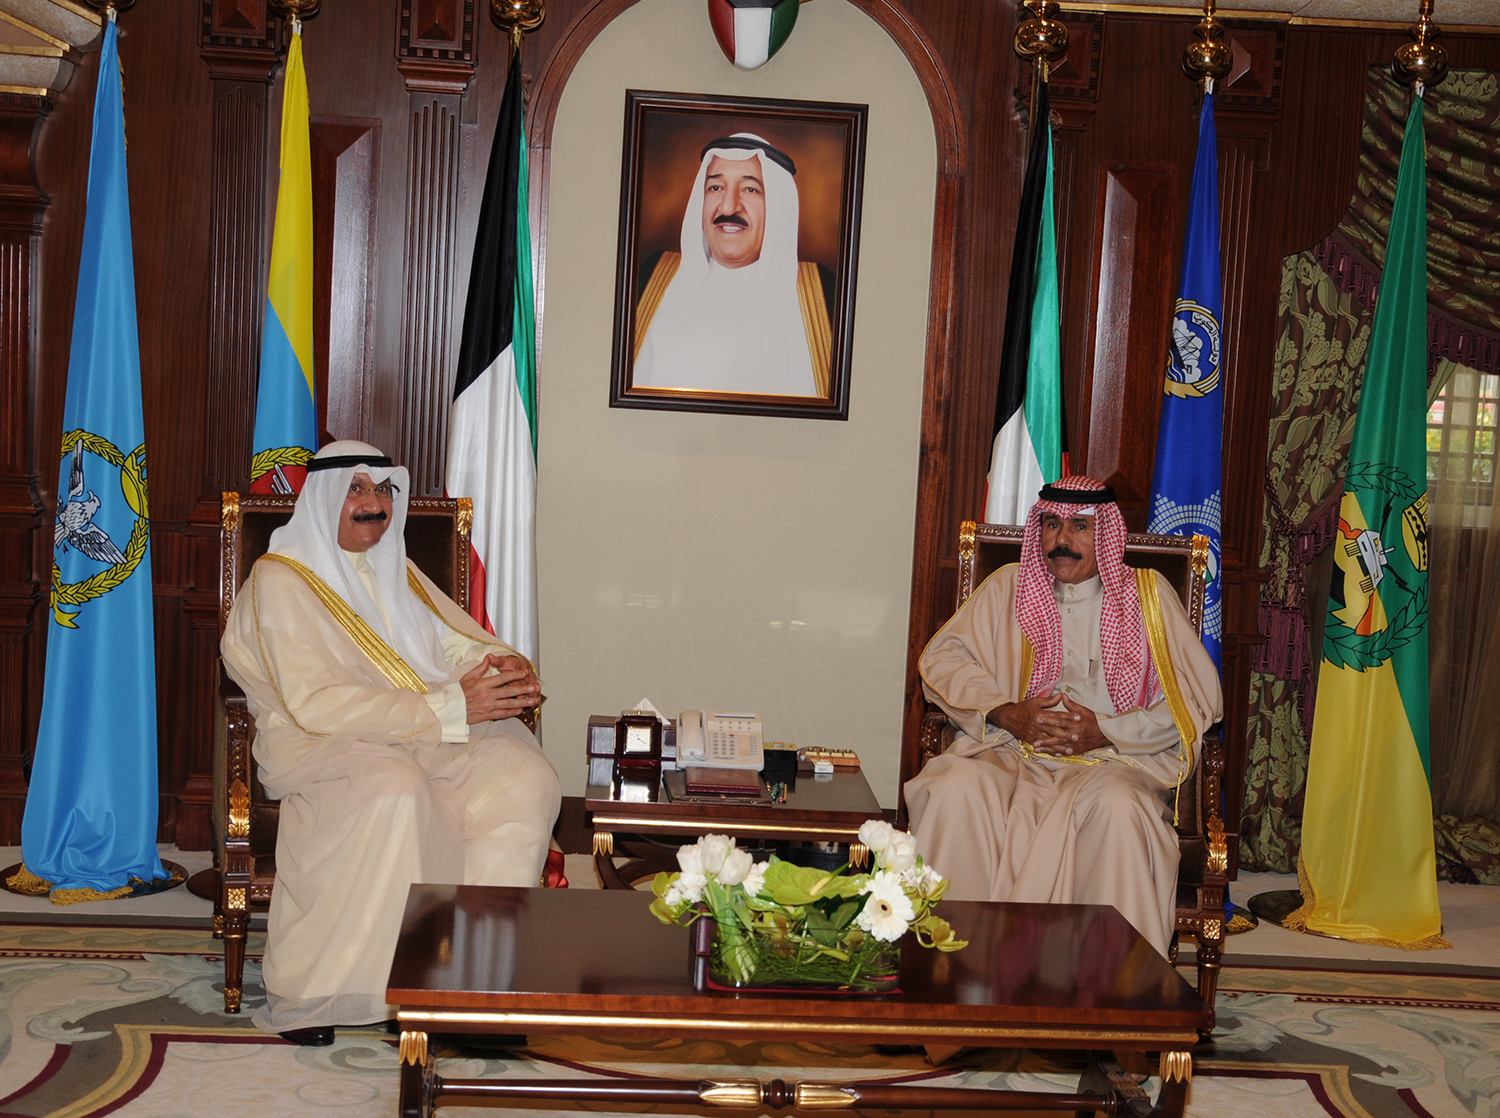 His Highness the Crown Prince Sheikh Nawaf Al-Ahmad Al-Jaber Al-Sabah receives Sheikh Salem Al-Saud Al-Sabah